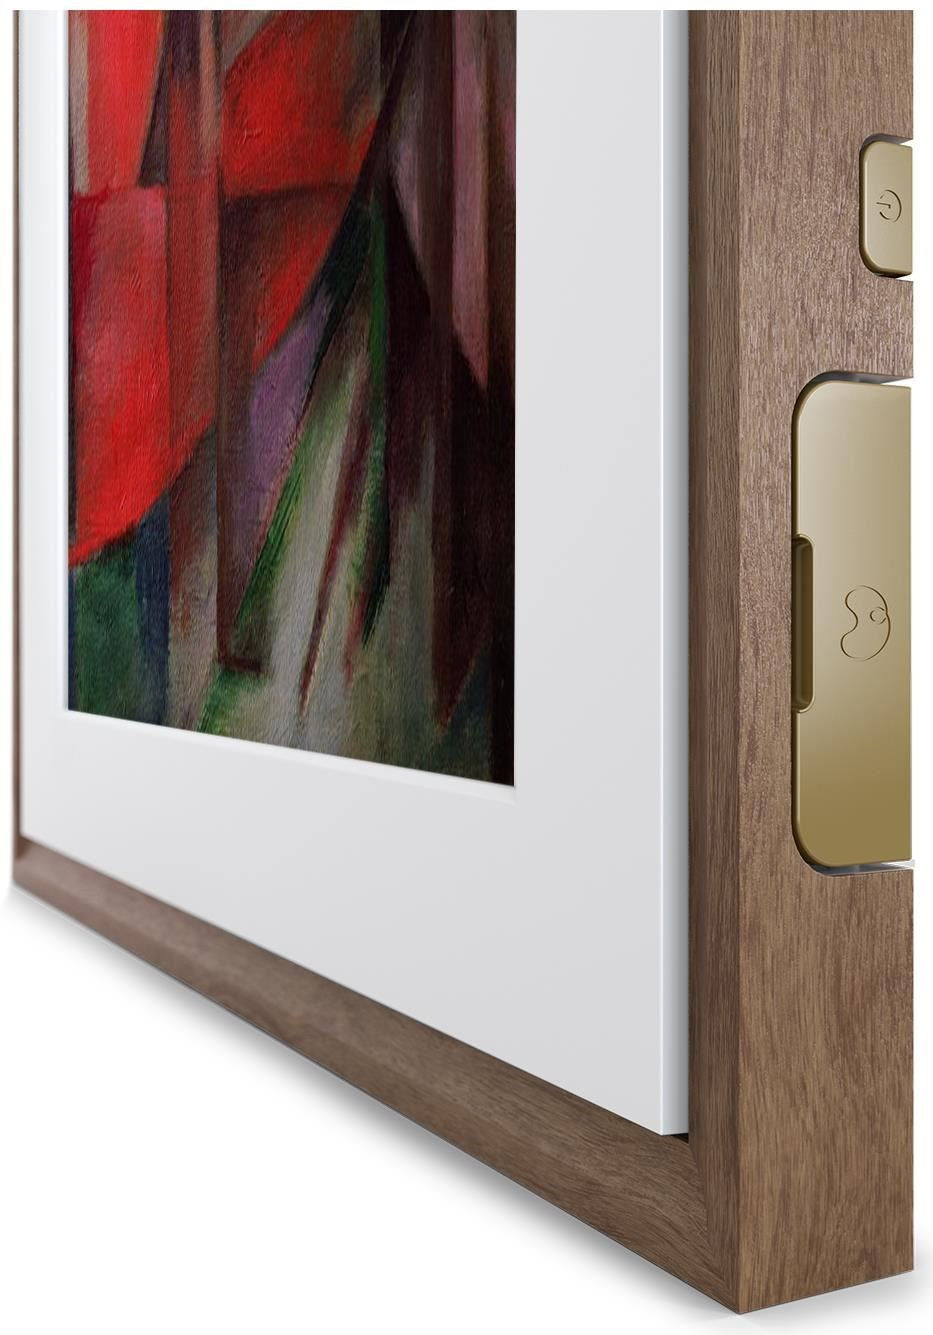 Meural MC327HW-100PAS 19x29 Canvas II Digital Smart Art, Photo & Video Frame, Walnut